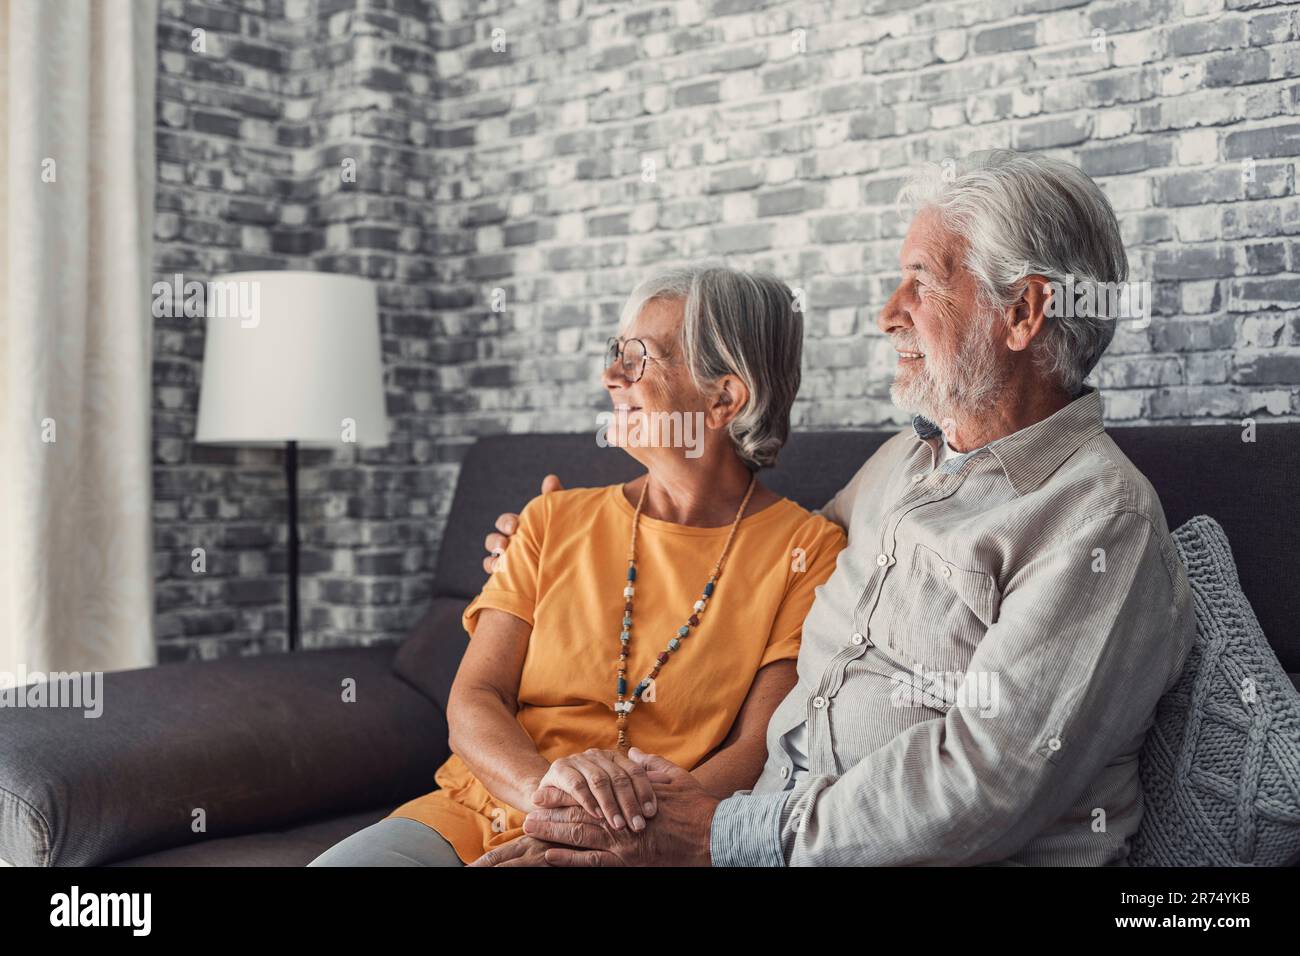 Glücklicher, reifer Mann und Frau sitzen zu Hause auf der Couch, umarmen und kuscheln, zeigen Fürsorge, lächelndes, liebevolles Seniorenpaar Entspannen Sie sich auf dem Sofa, genießen Sie ein zartes romantisches Familienwochenende zusammen Stockfoto